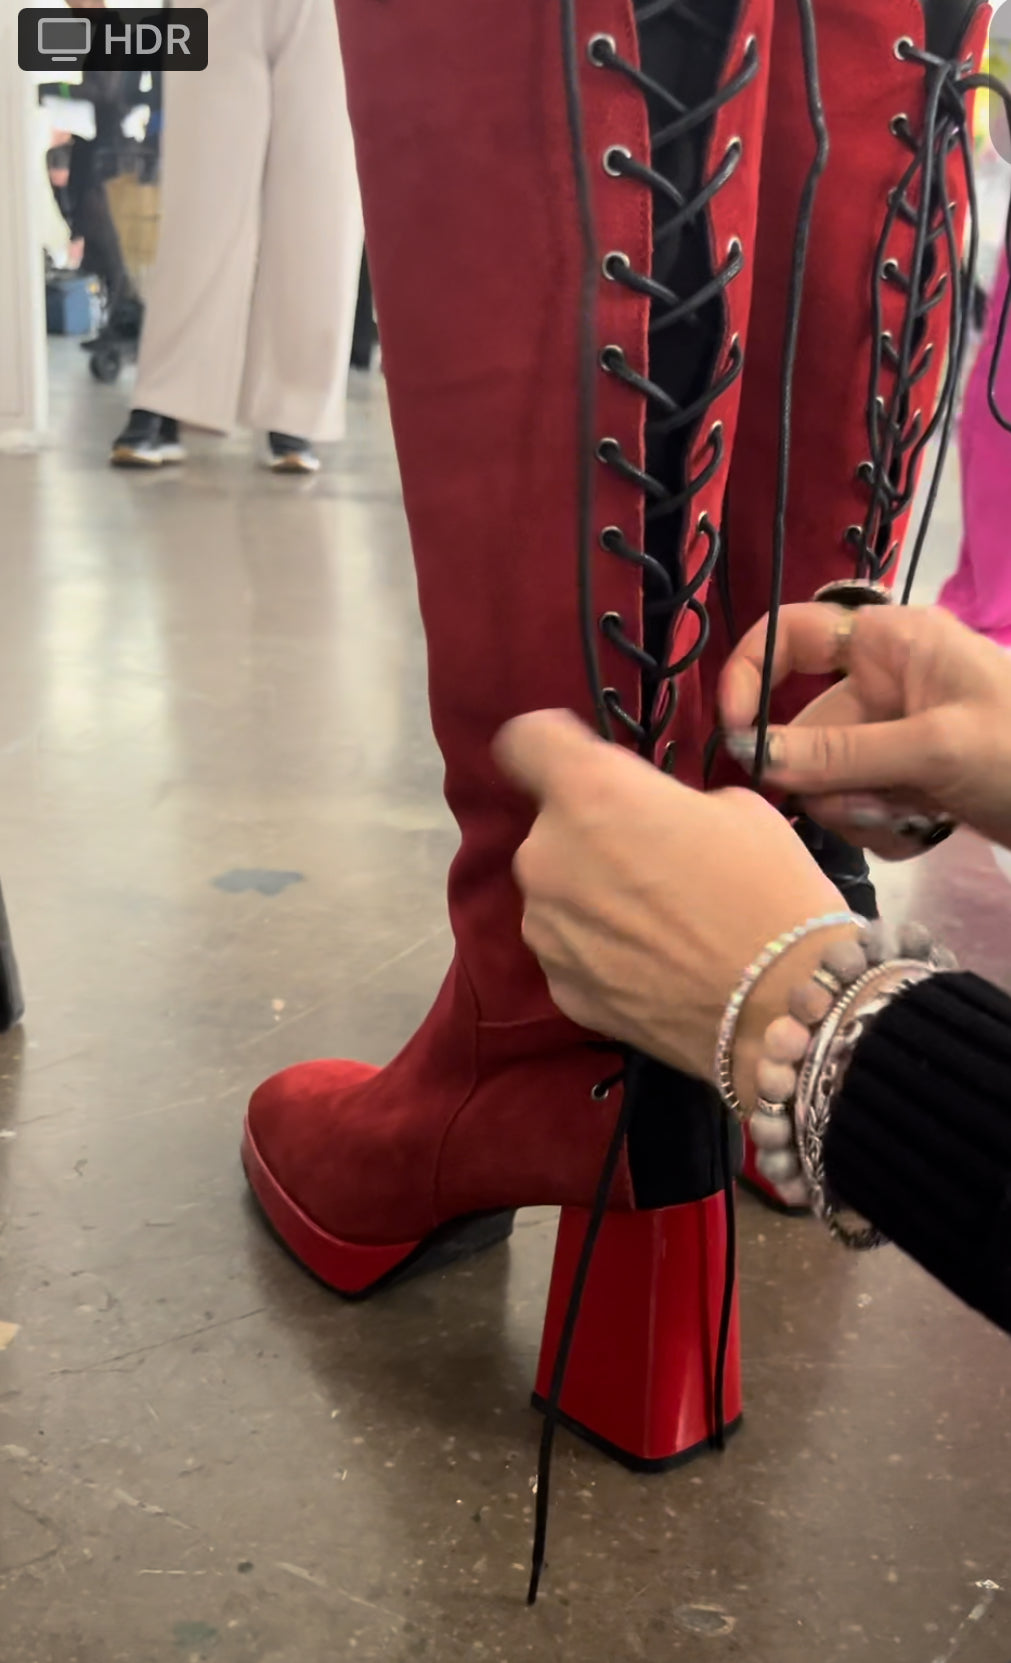 La Femme - Red long leg platform heel boot- Pre order only